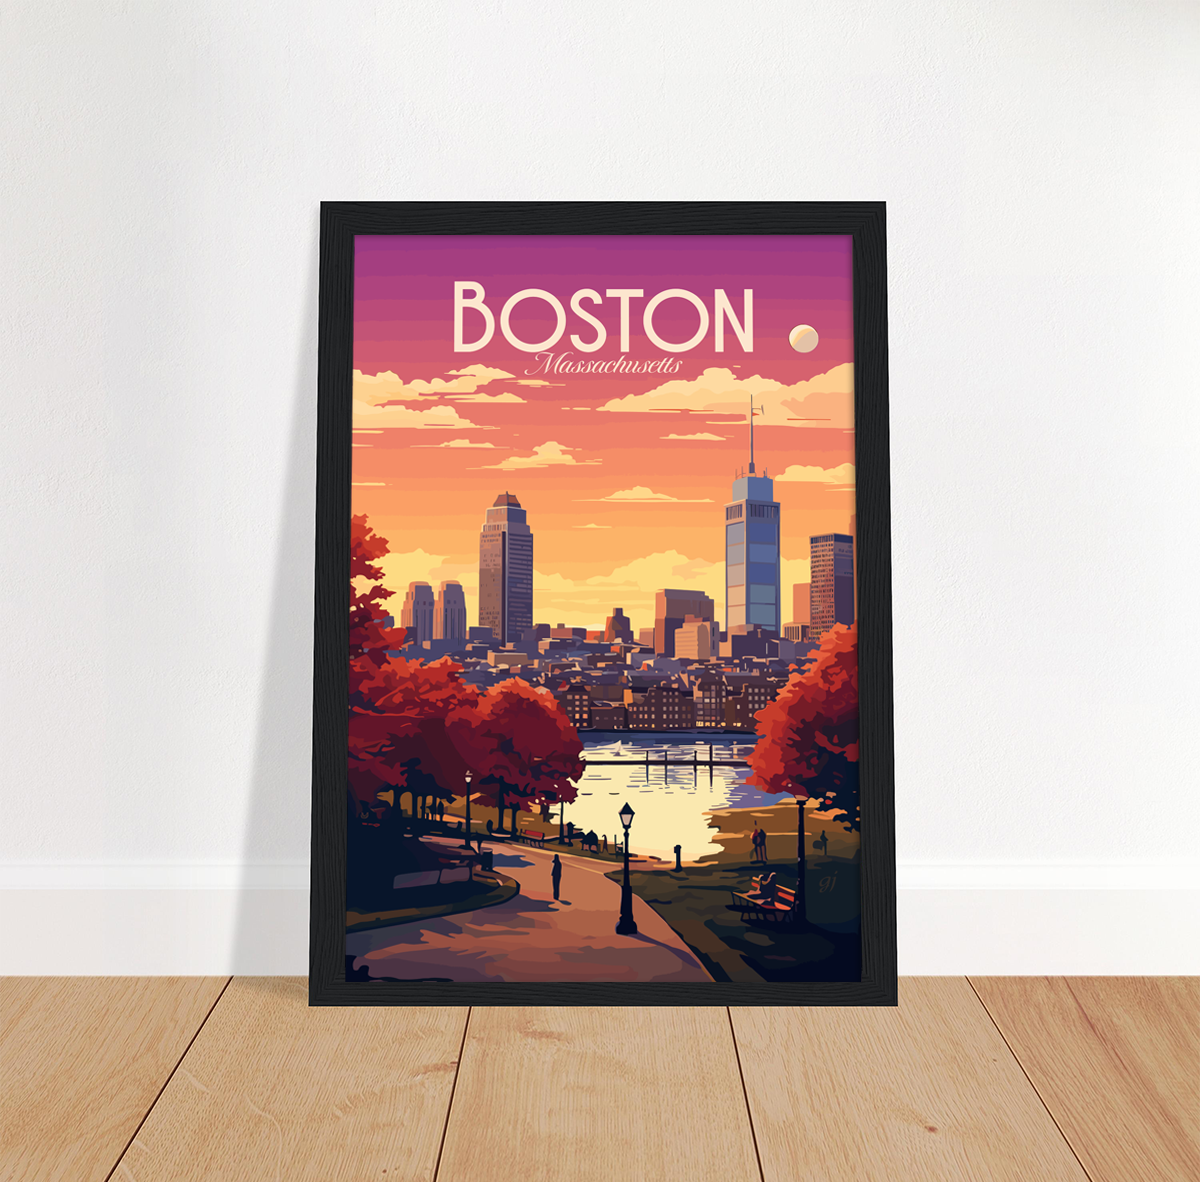 Boston poster by bon voyage design